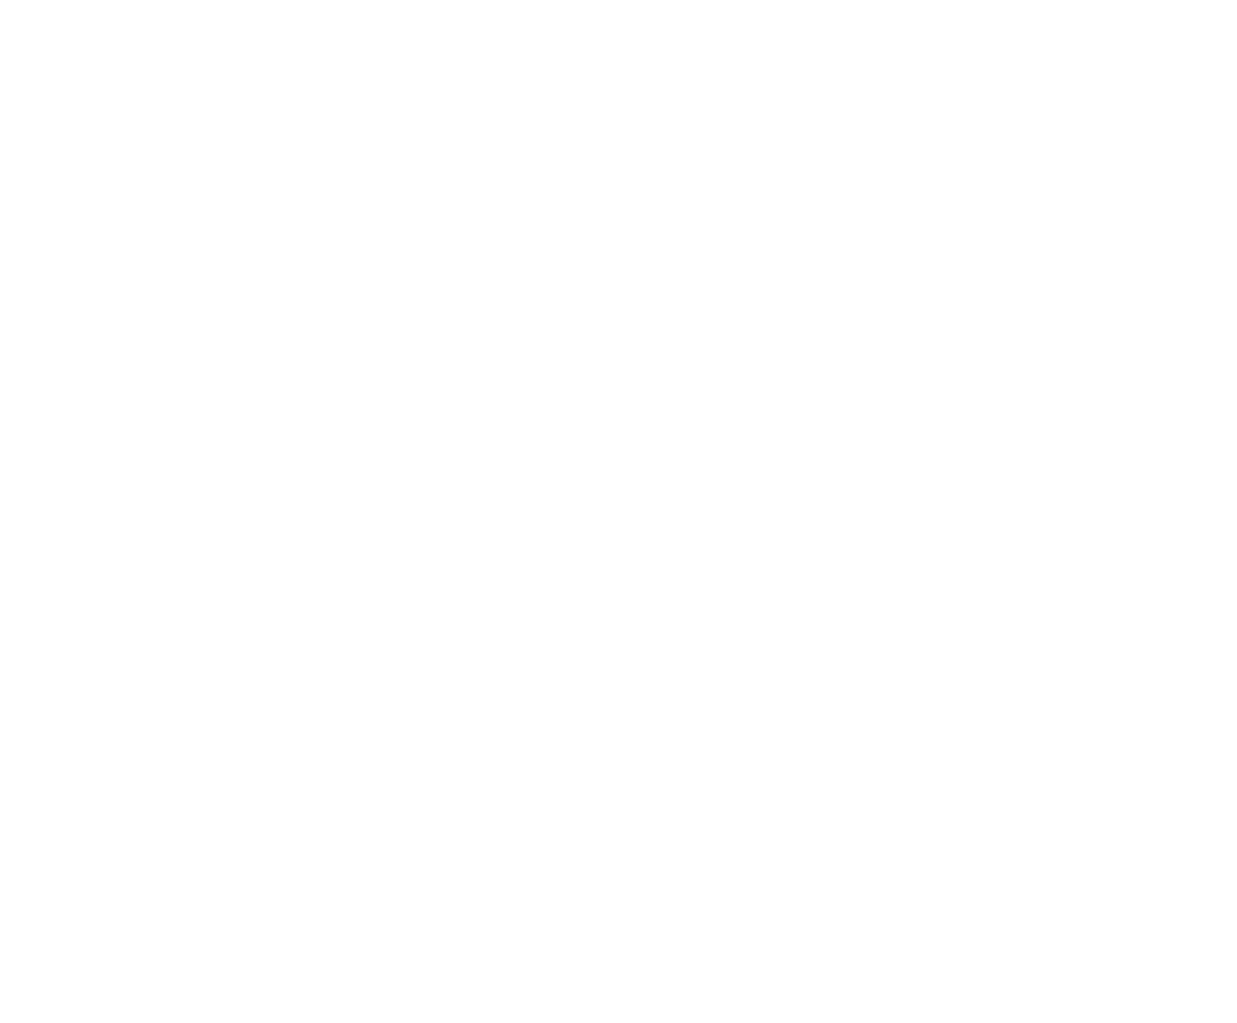 Rosselot Sur Restaurante & Delivery – El Restaurante & Delivery de Coyhaique